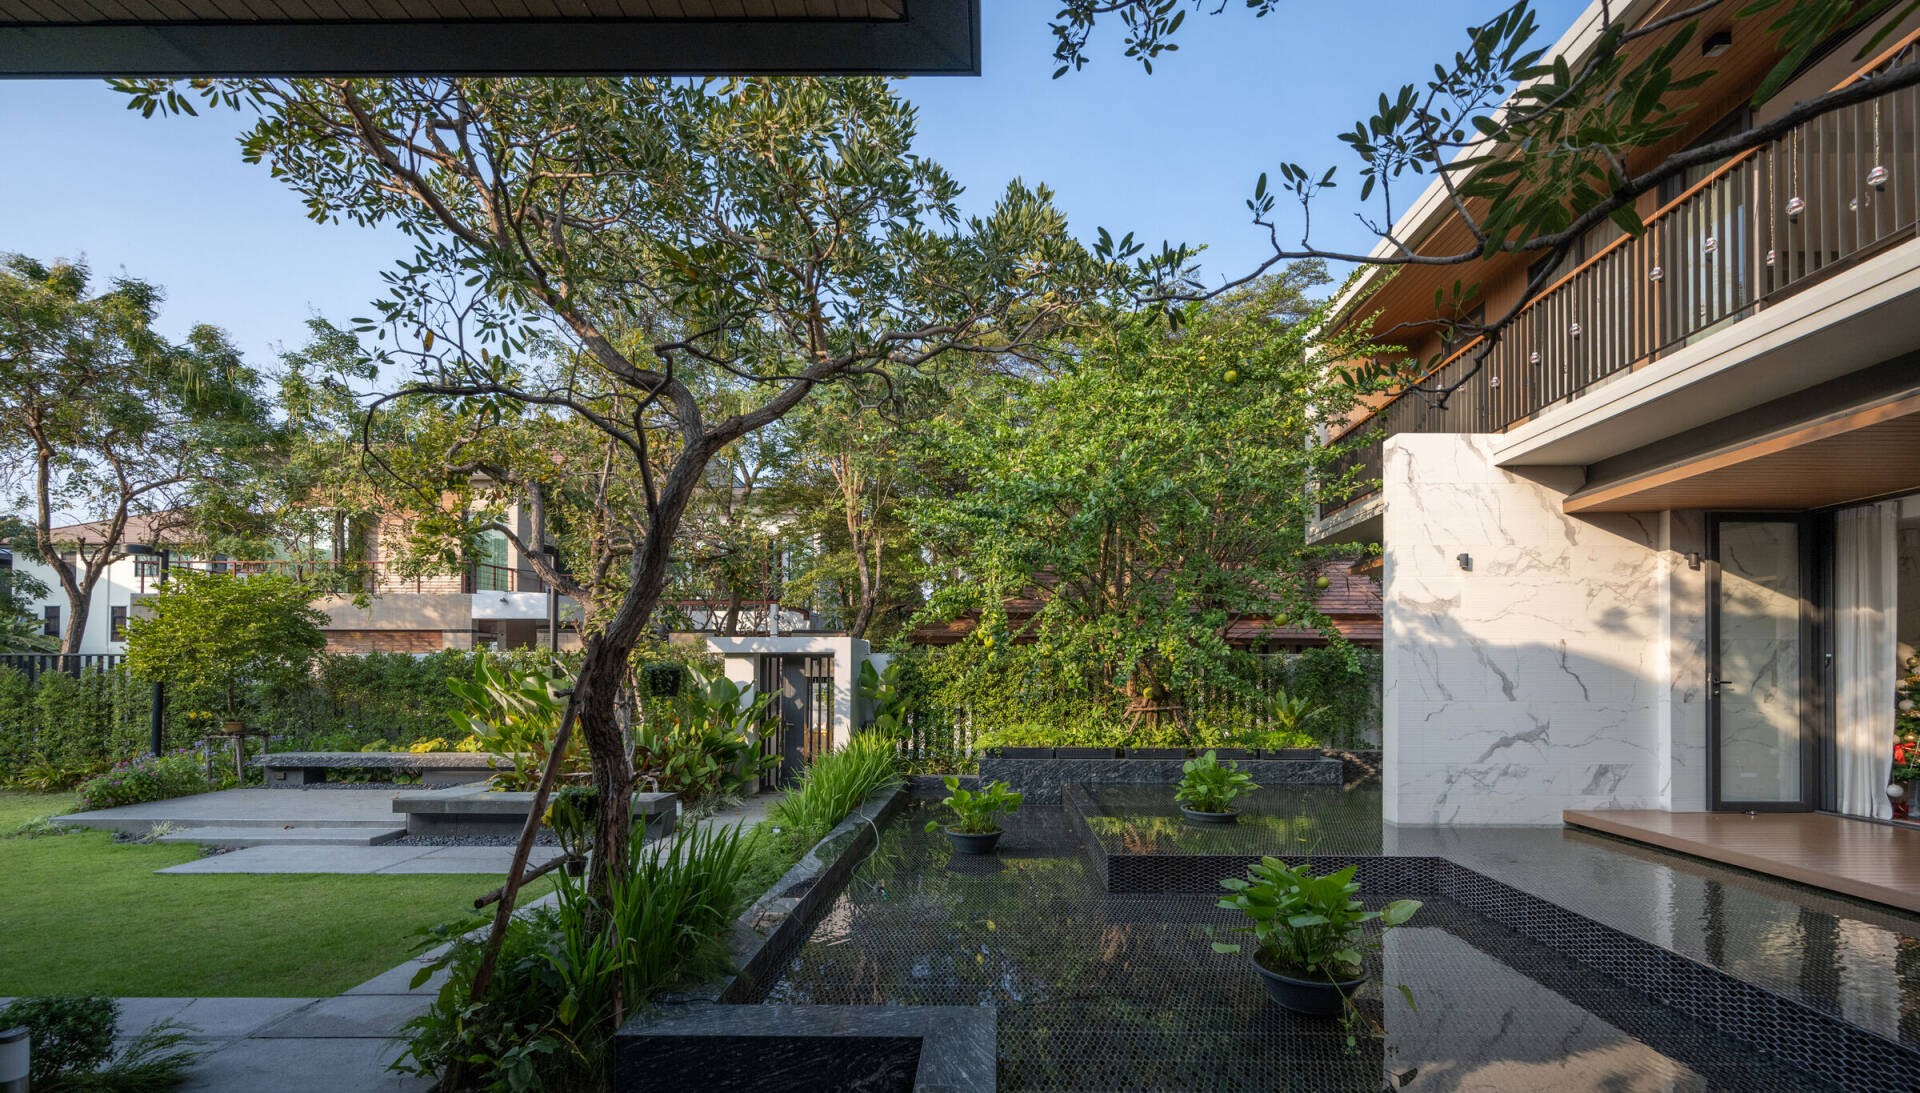 
Cây xanh xung quanh căn nhà tạo nên một không gian sống thư thái, gần gũi với thiên nhiên
